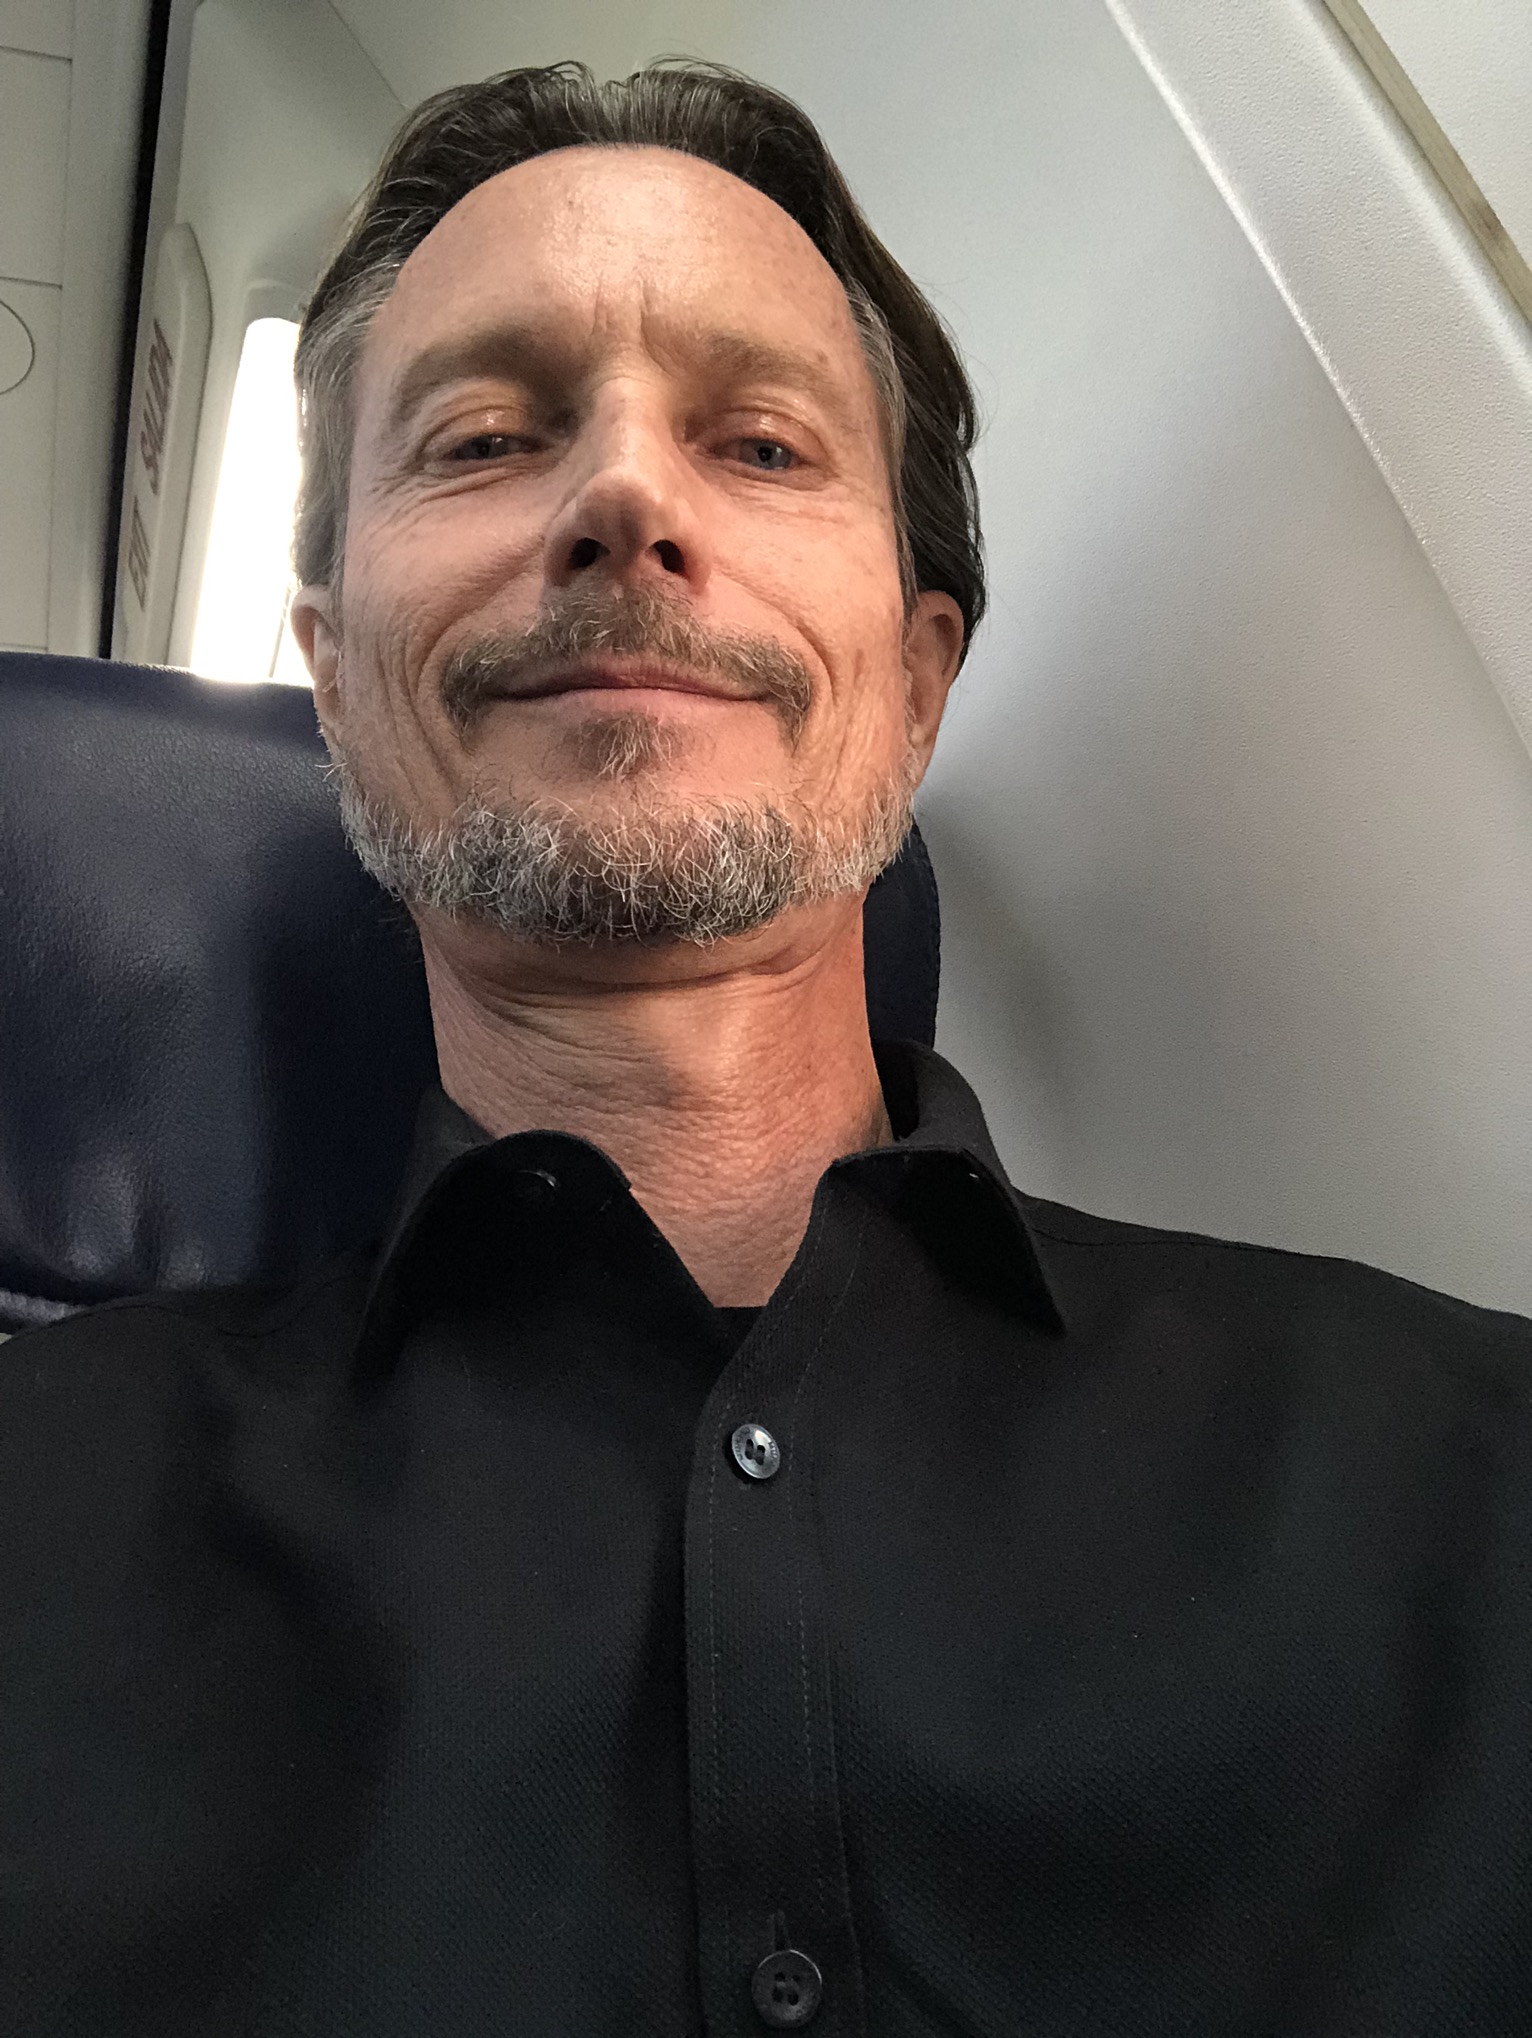 Allan Sturm Selfie in Airplane